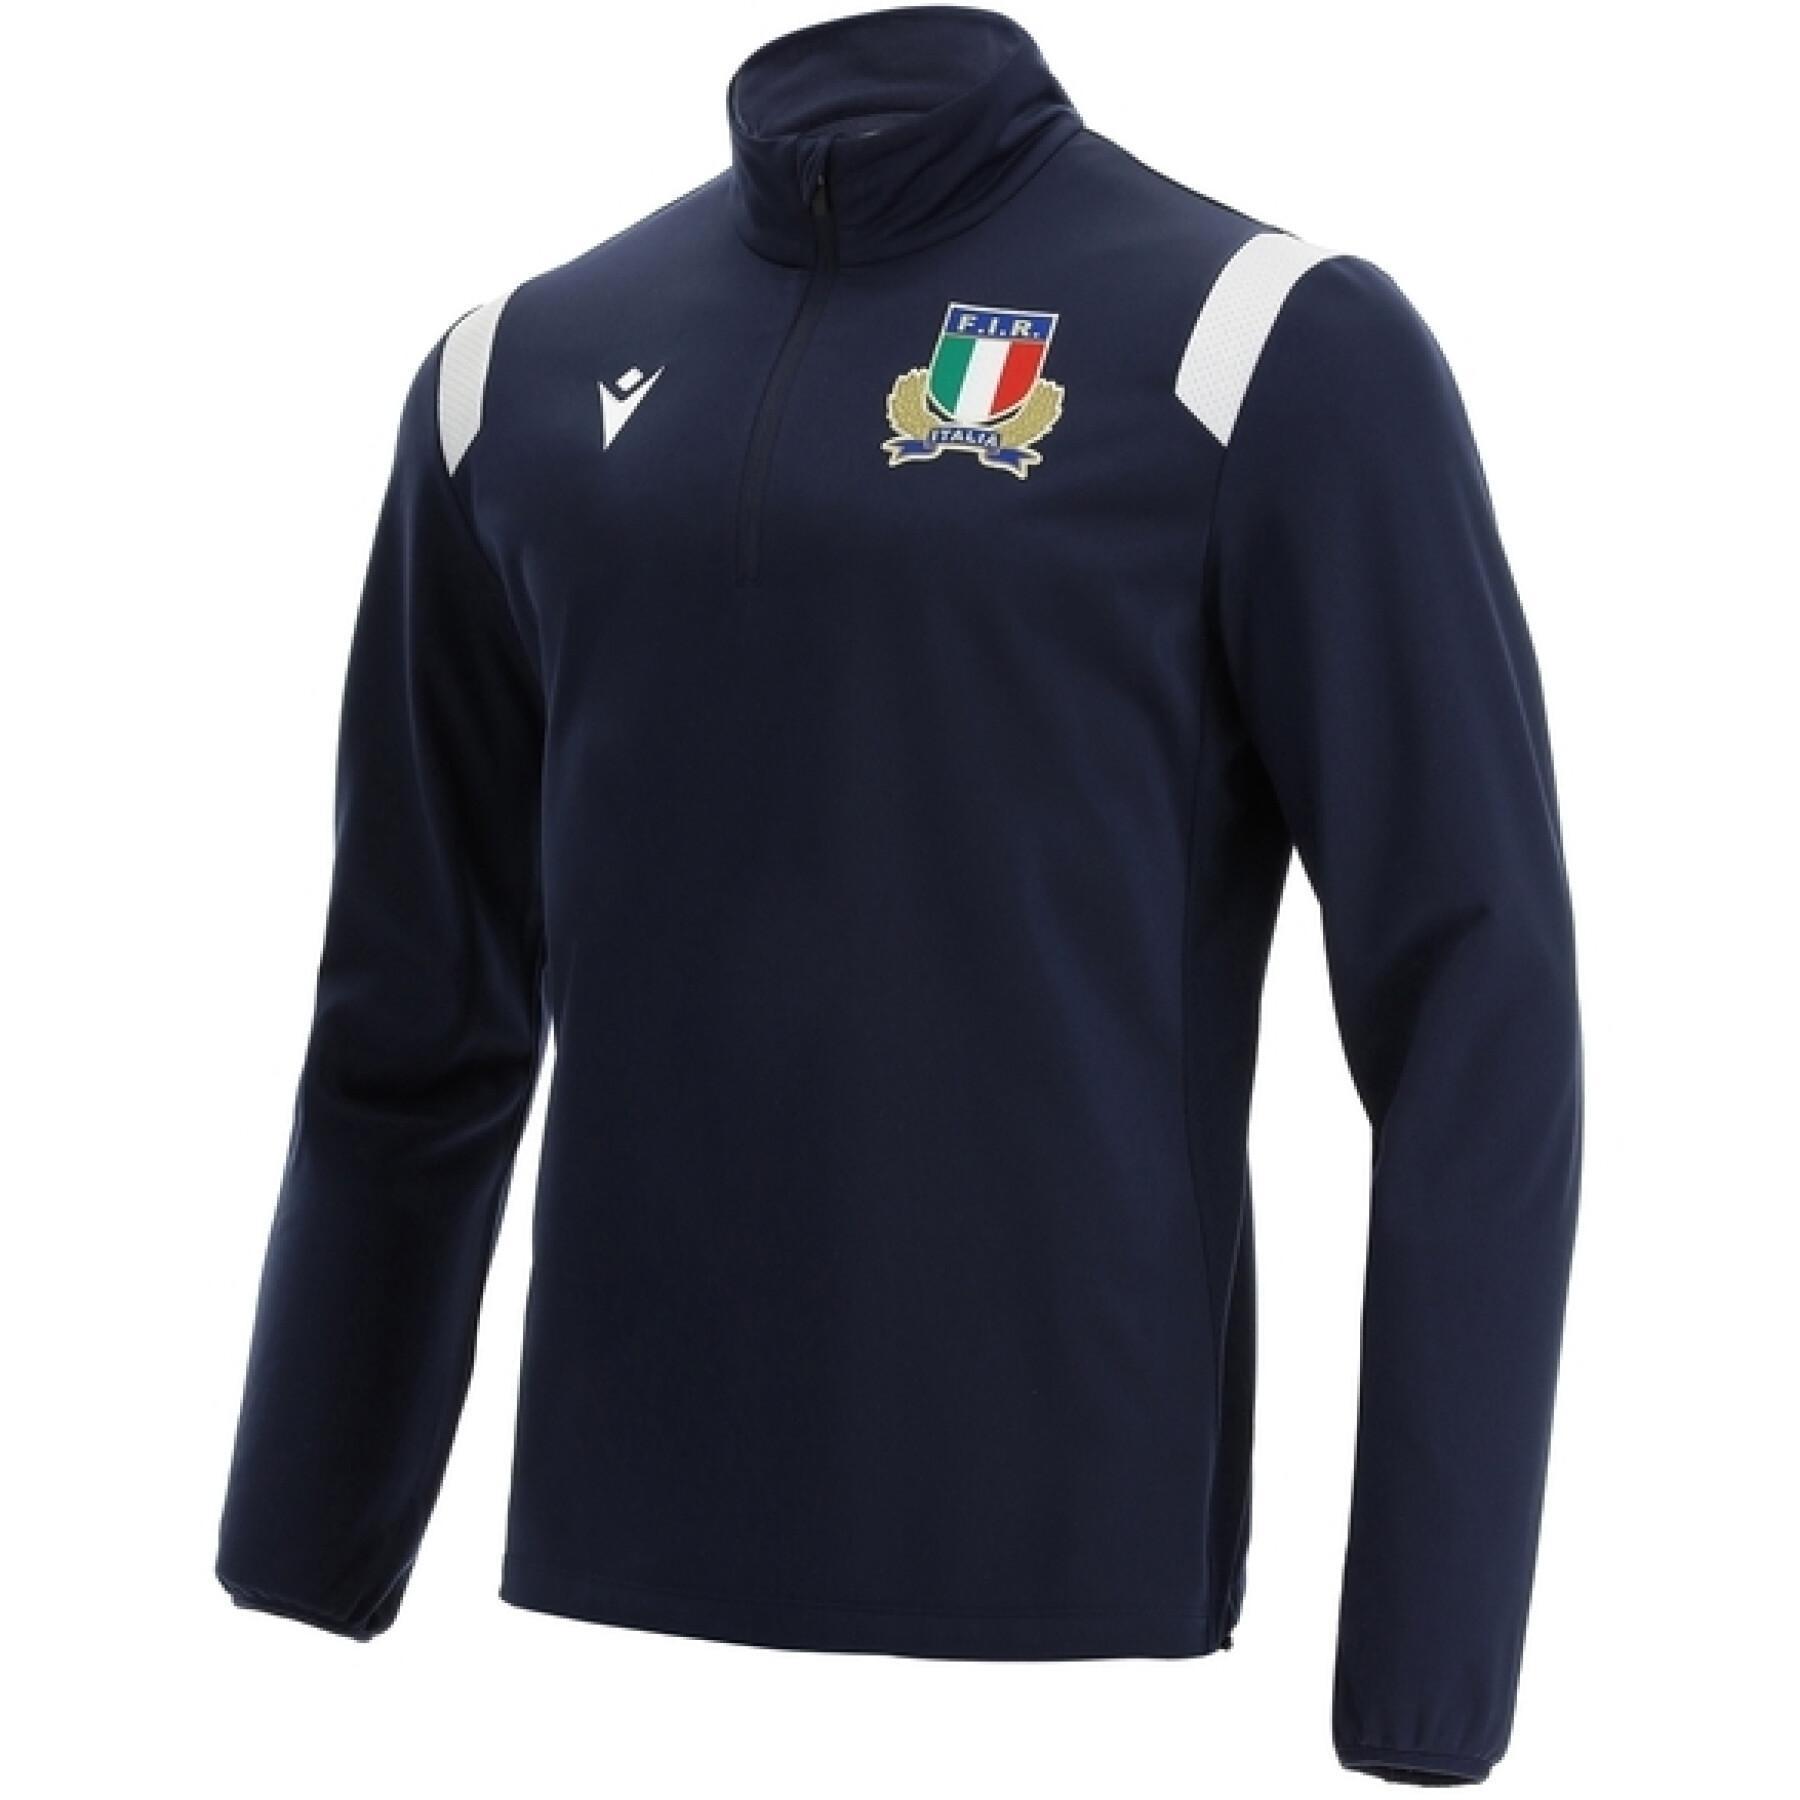 Children's training jersey Italie Rugby 2021